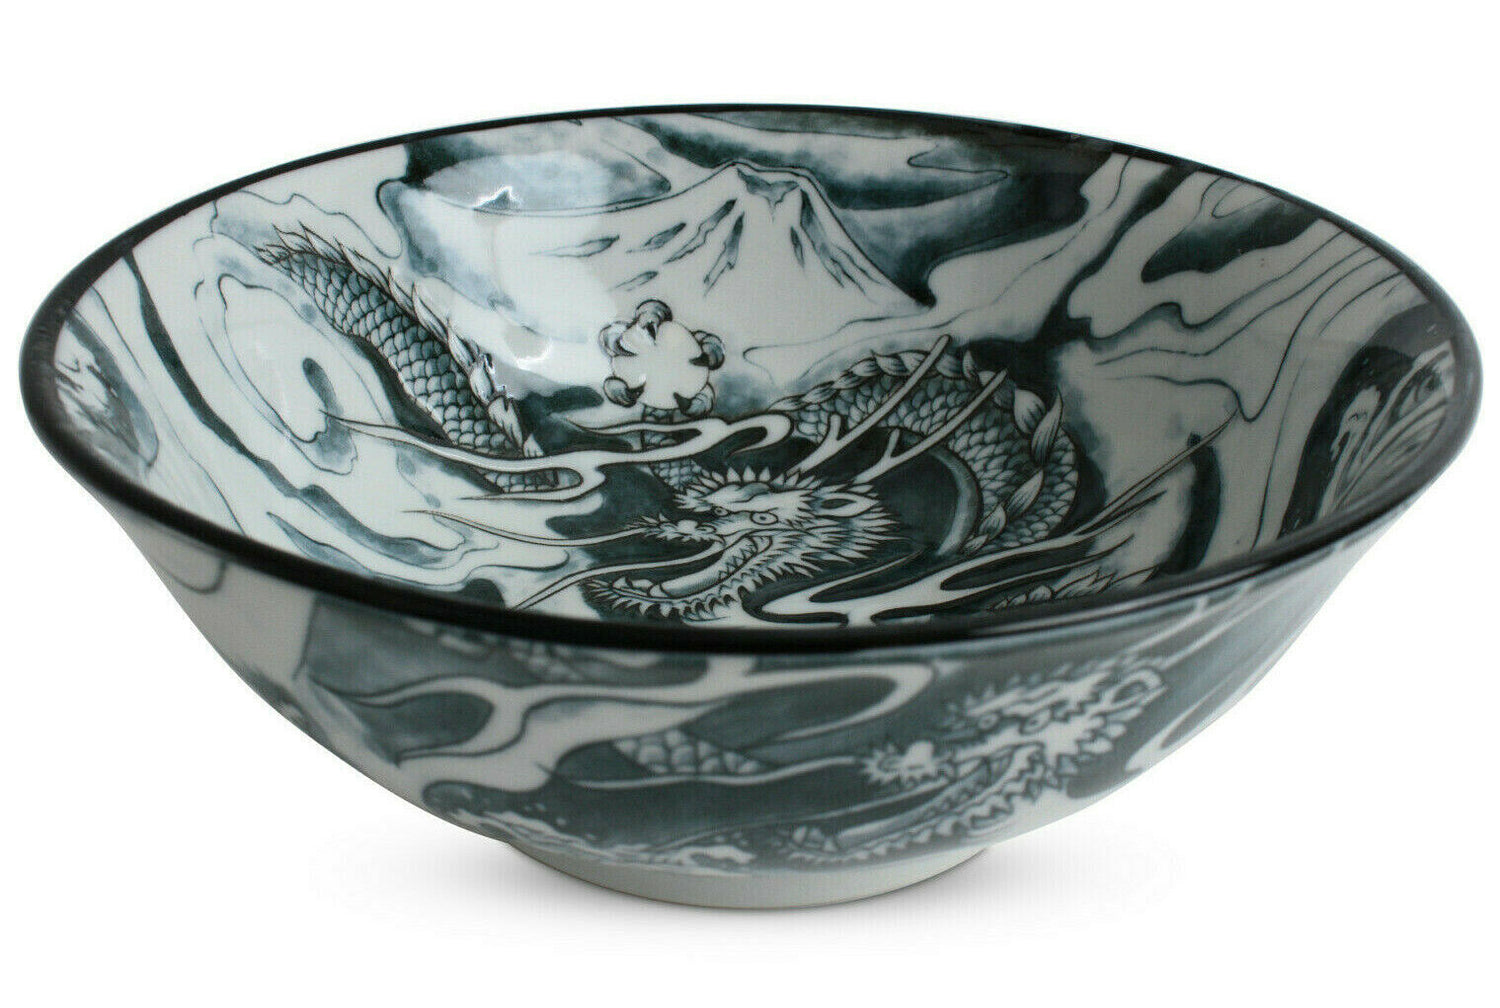 Mino ware Japanese Ceramics Ramen Noodle Donburi Bowl Dragon and Mt. Fuji Black made in Japan